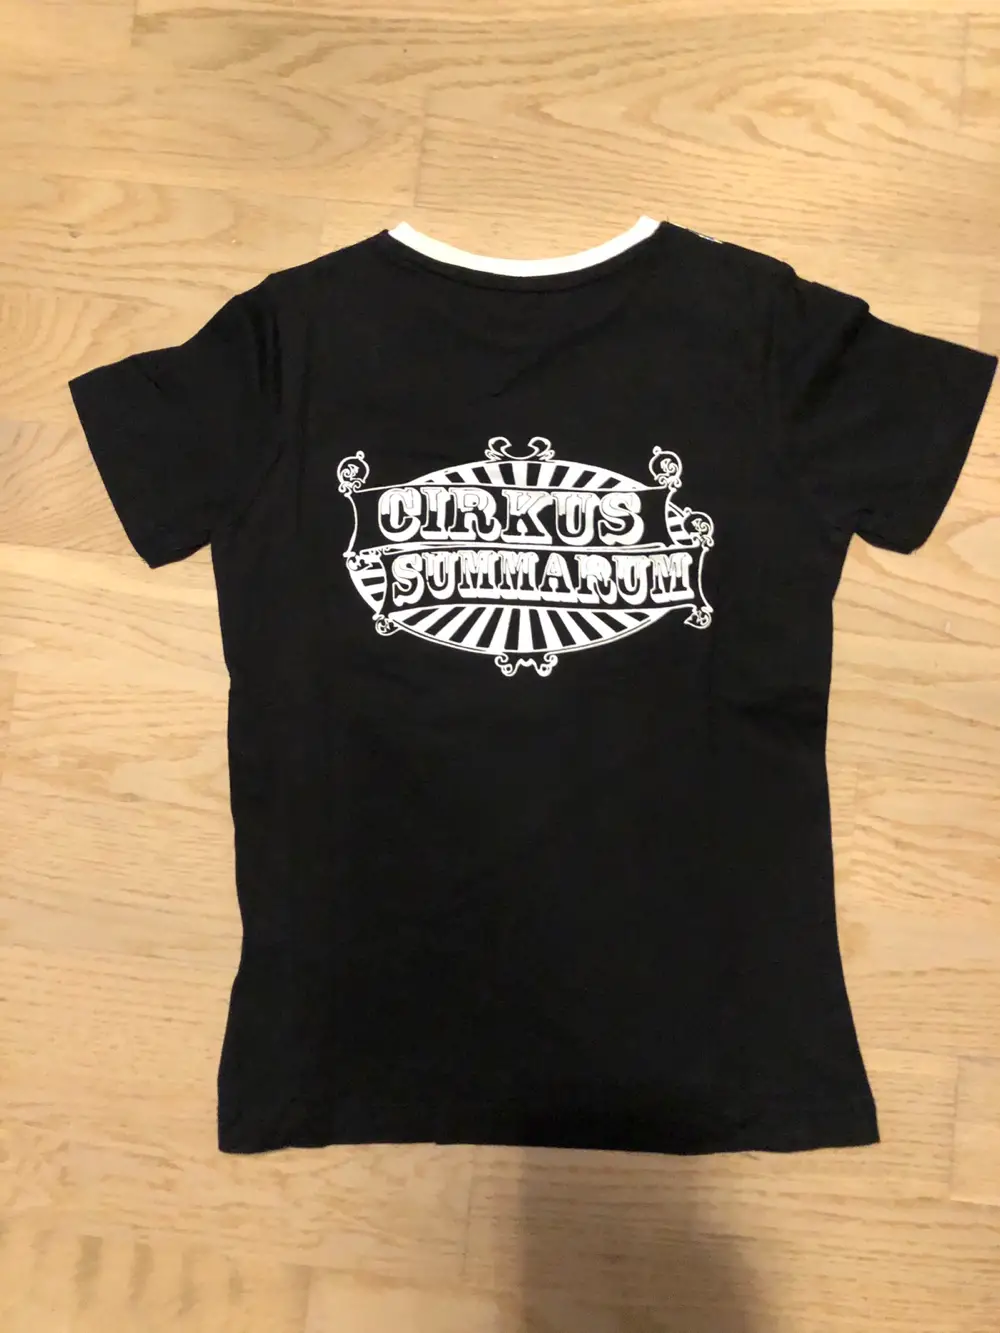 name it Cirkus Summarum t-shirt i størrelse 110 af Lilian på · Shop secondhand til børn, mor og bolig